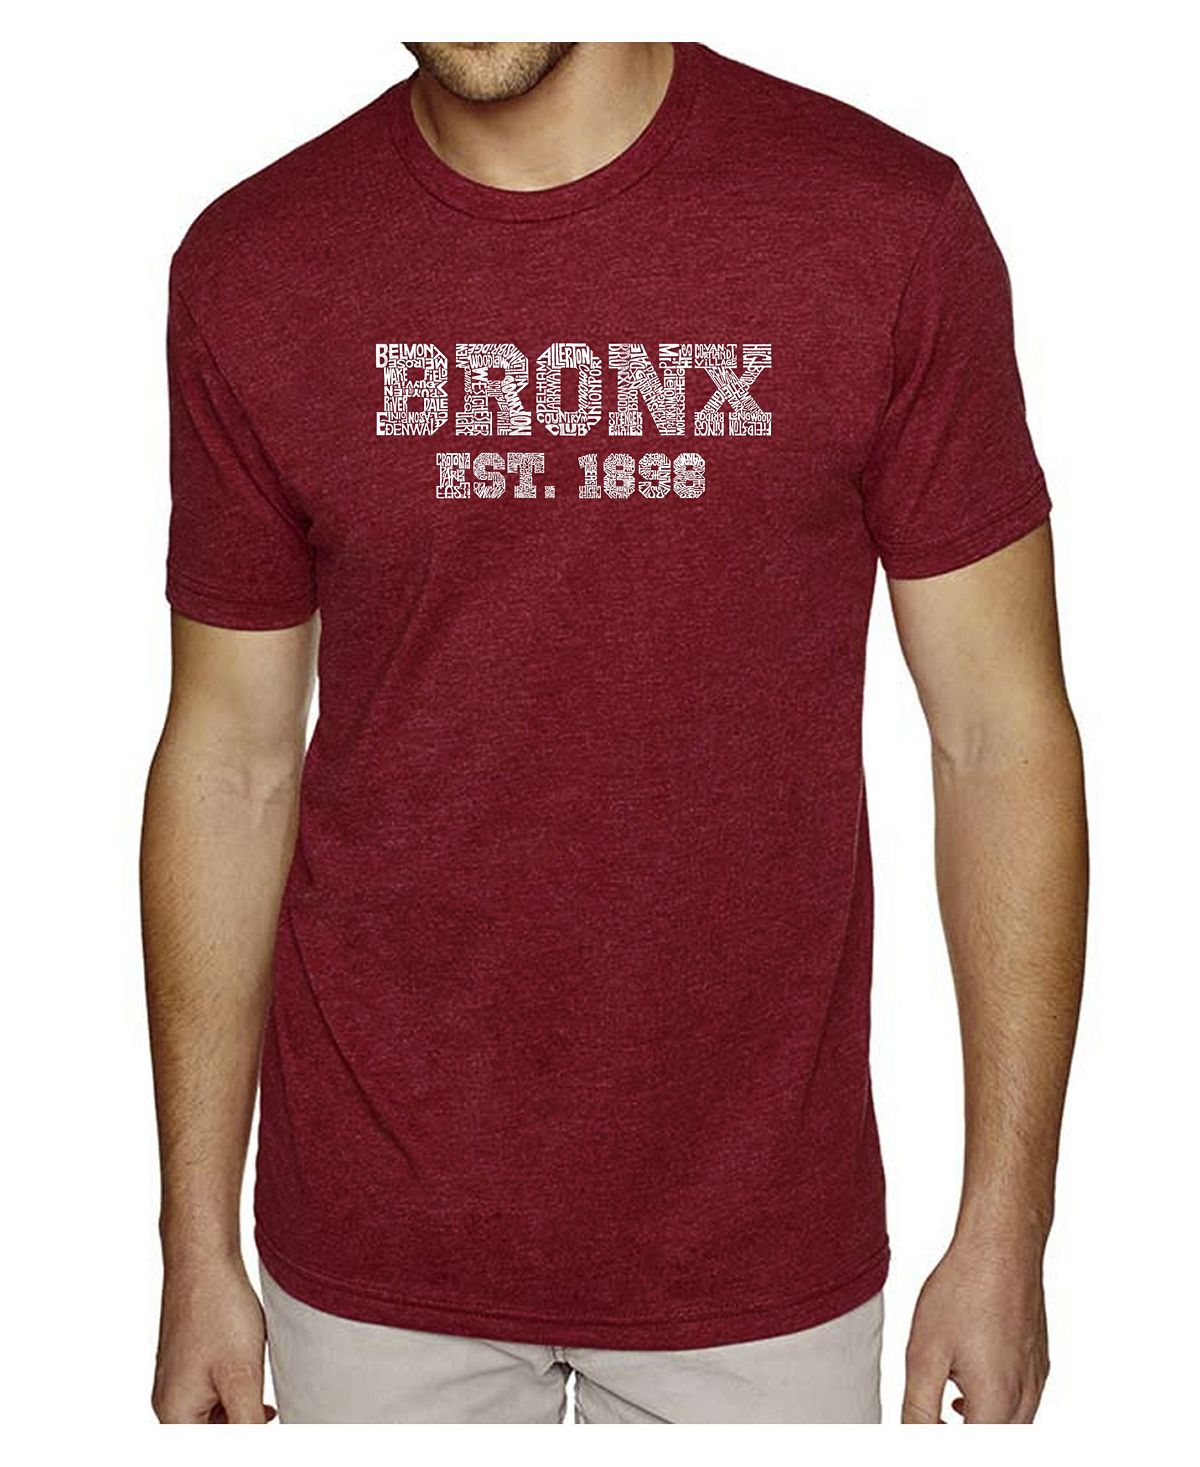 Мужская футболка premium blend word art - популярный бронкс, районы нью-йорка LA Pop Art этим утром в нью йорке